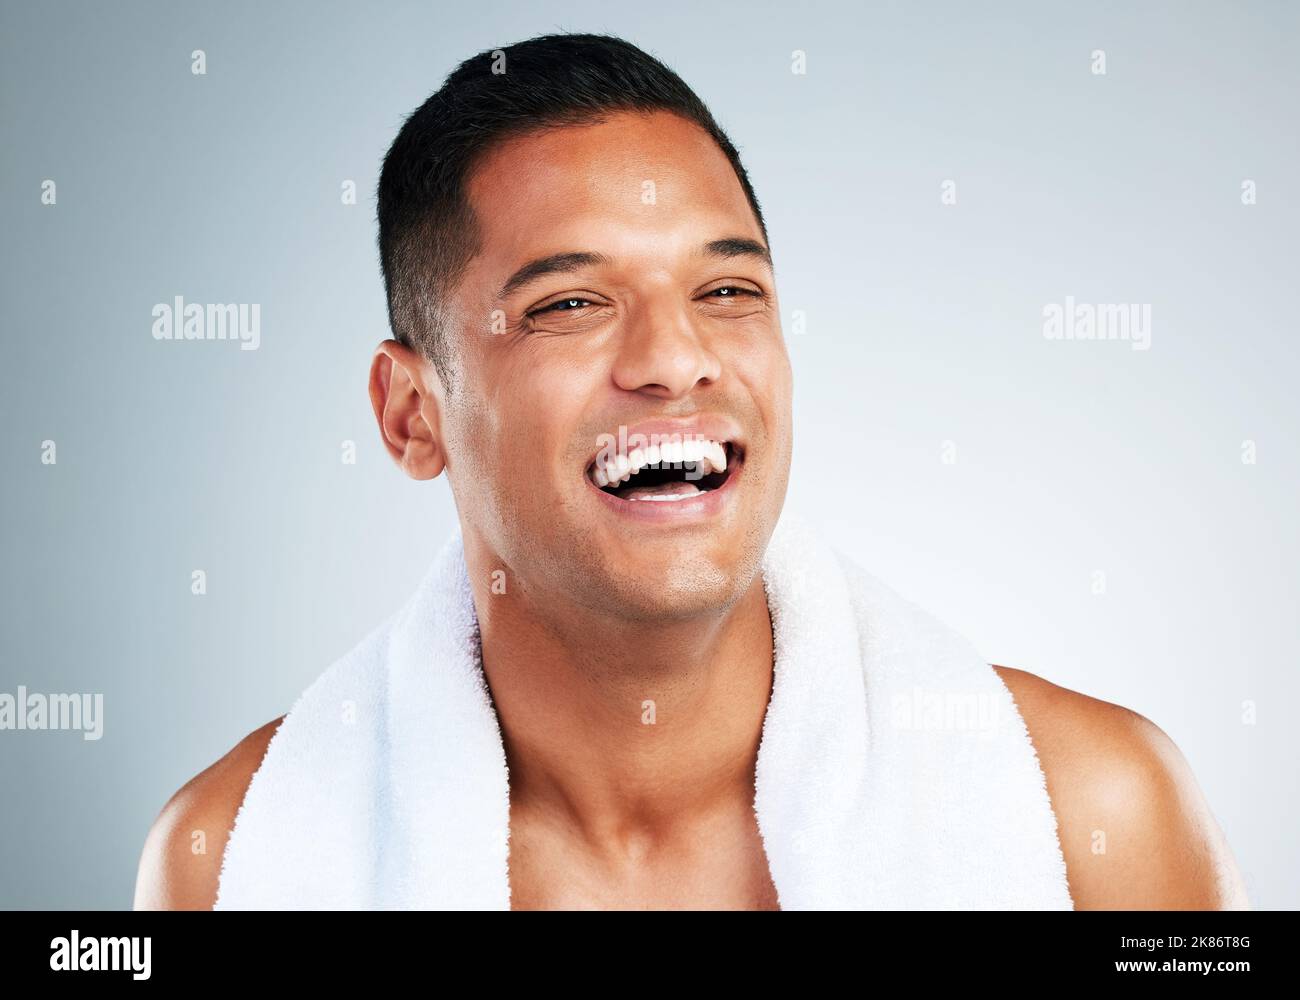 Glücklich, lachen und Gesicht des Mannes sauber nach Wellness waschen, Gesichtsreinigung Routine und Hautpflege Mockup. Glück, Lächeln und Person mit Dusche Stockfoto